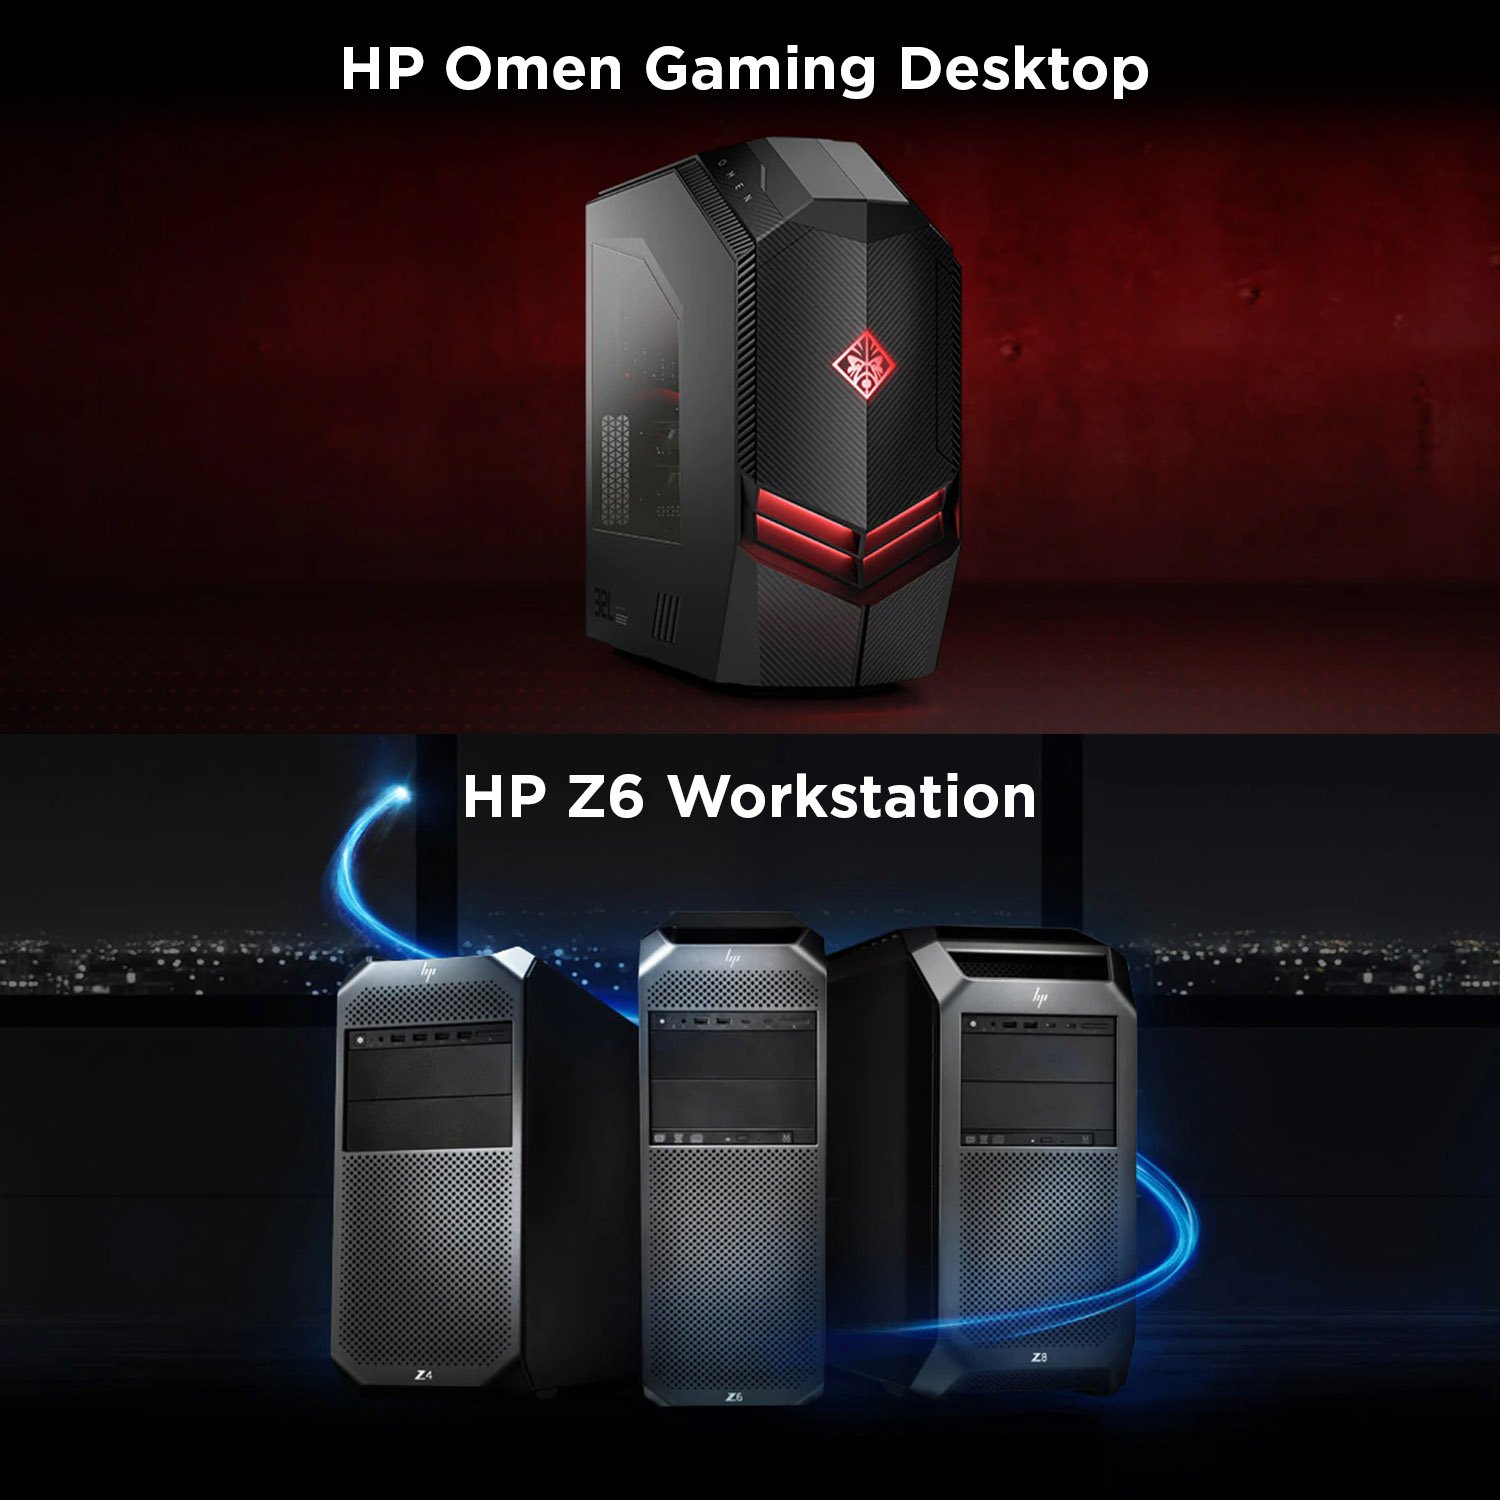 Gaming Desktop vs Workstation PCs - An Overview